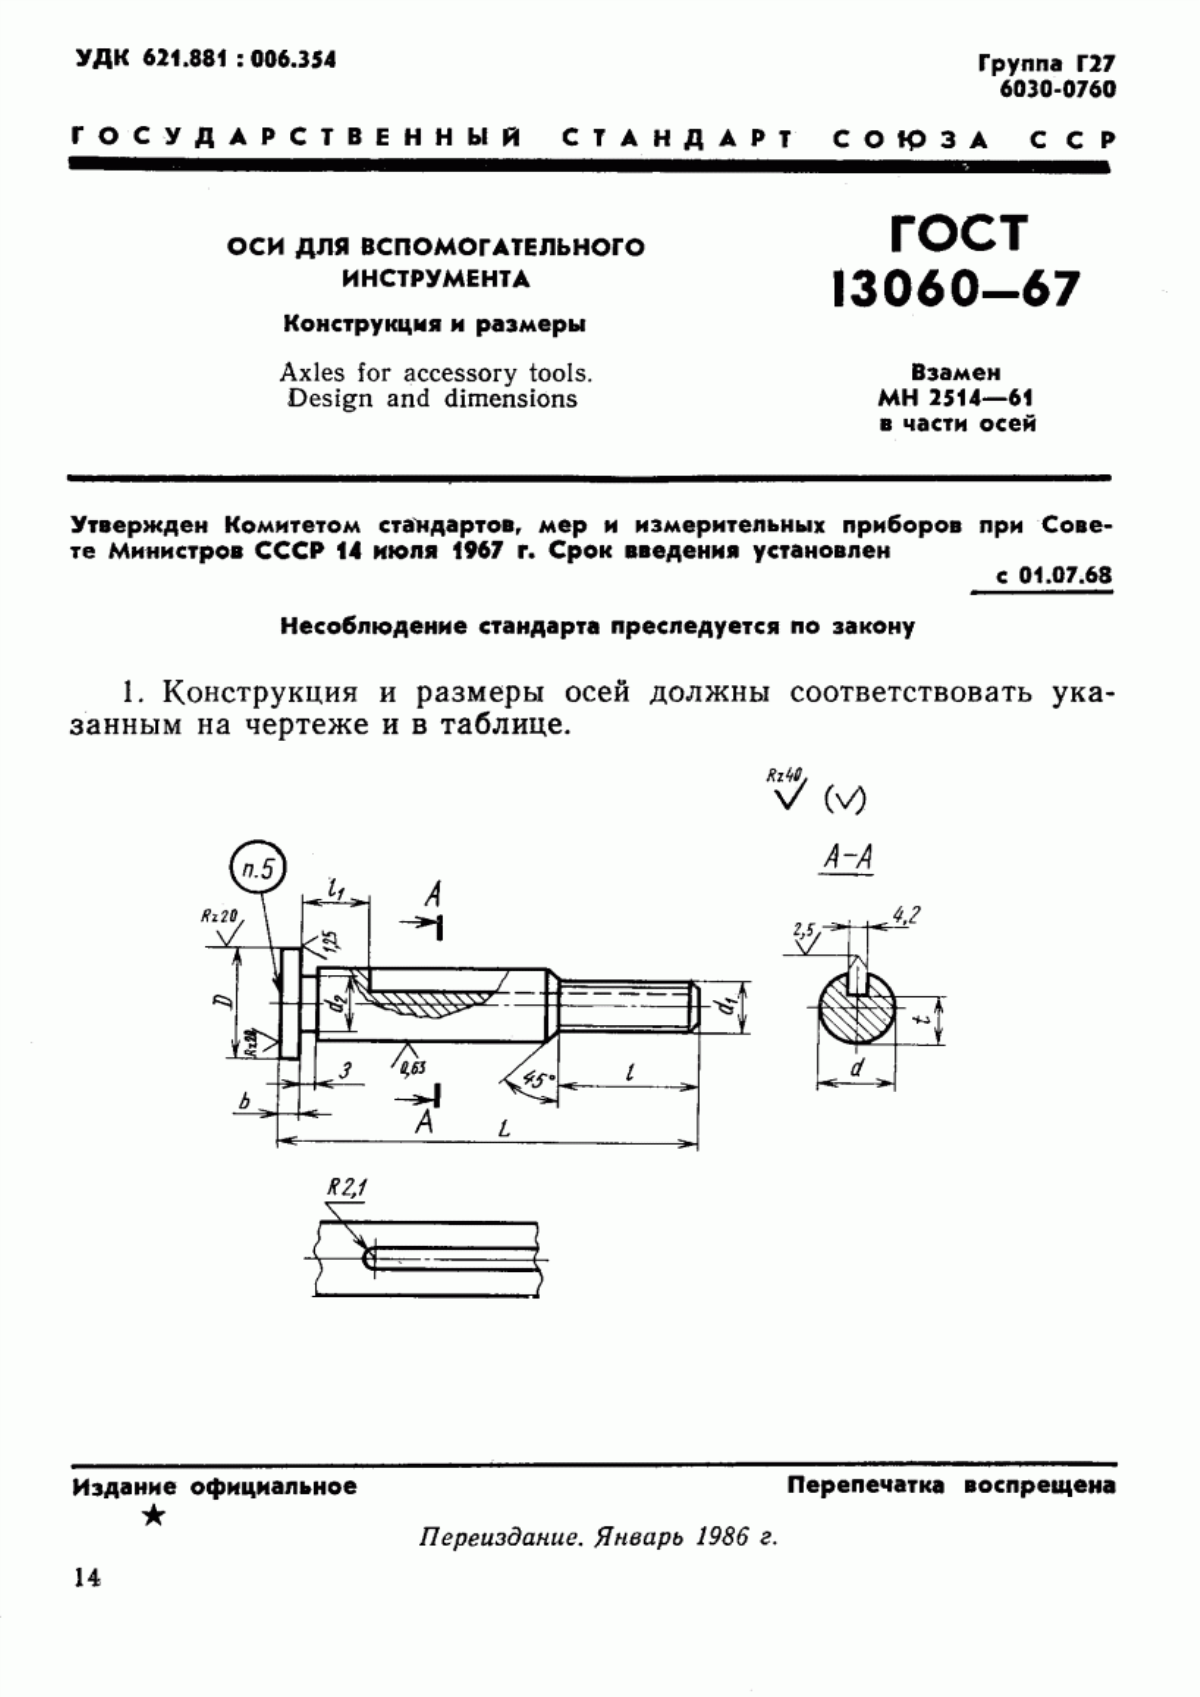 ГОСТ 13060-67 Оси для вспомогательного инструмента. Конструкция и размеры